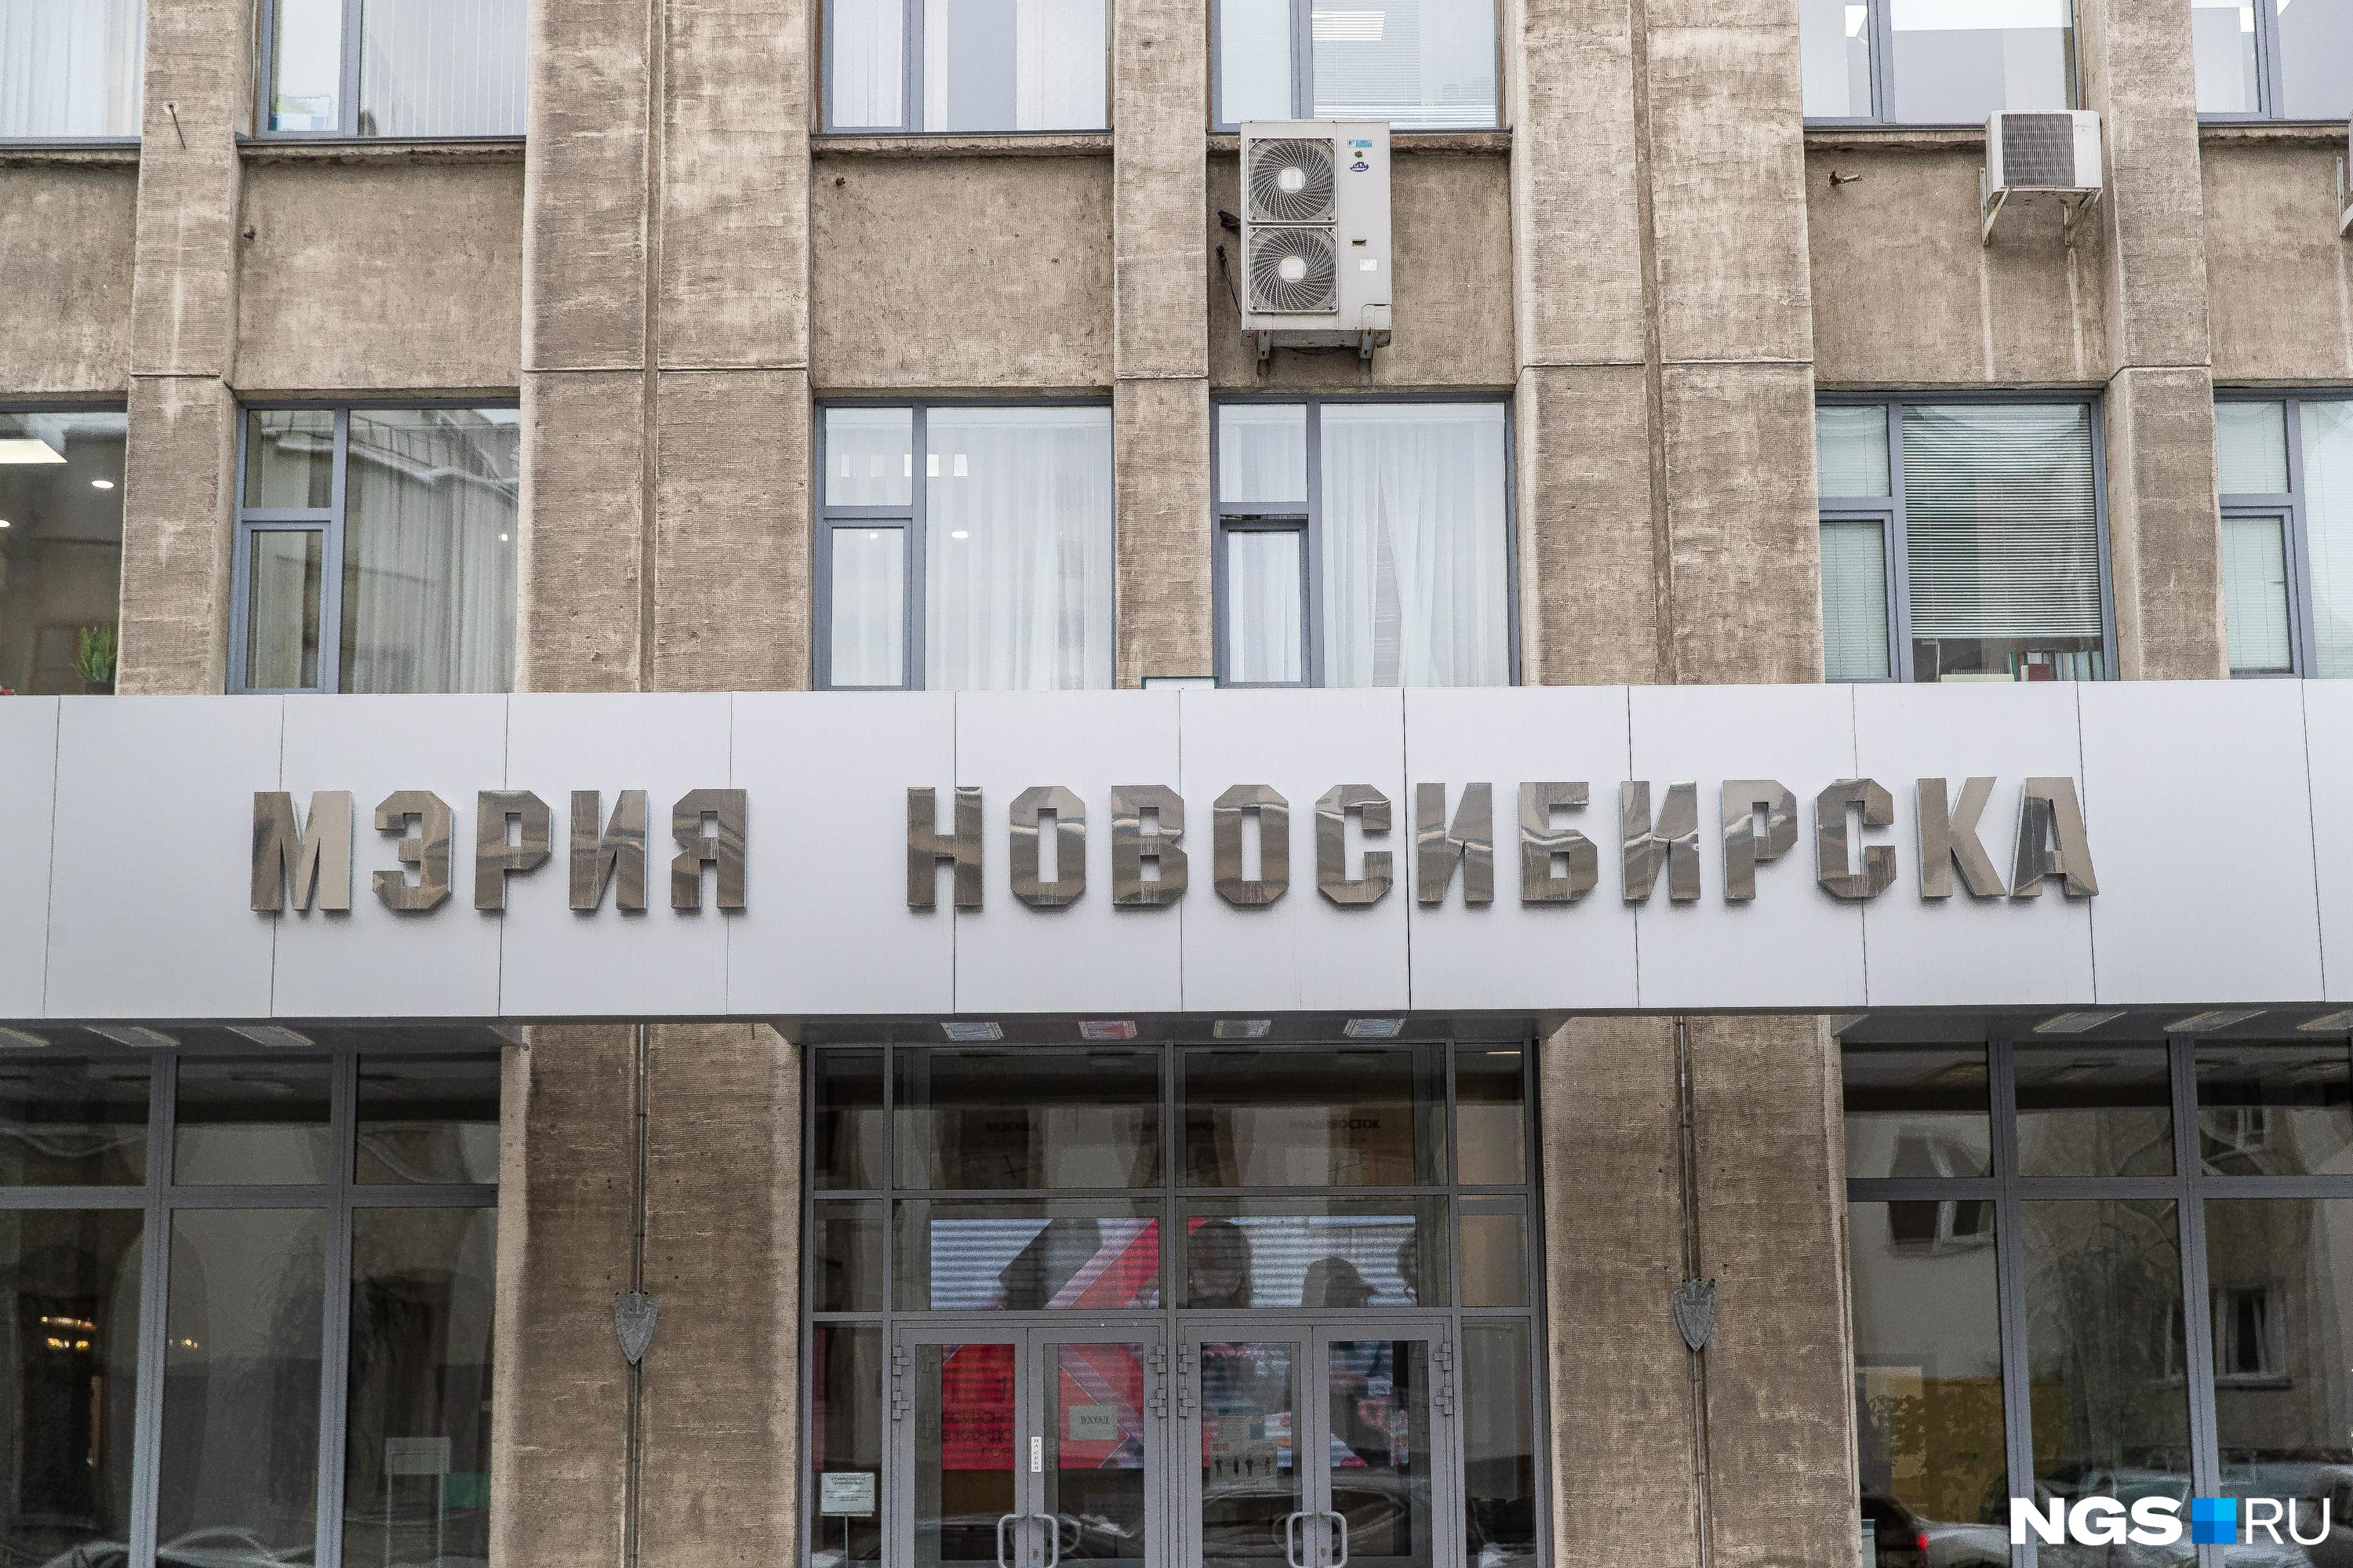 Депутаты назначили дату публичных слушаний по проекту об отмене прямых выборов мэра Новосибирска